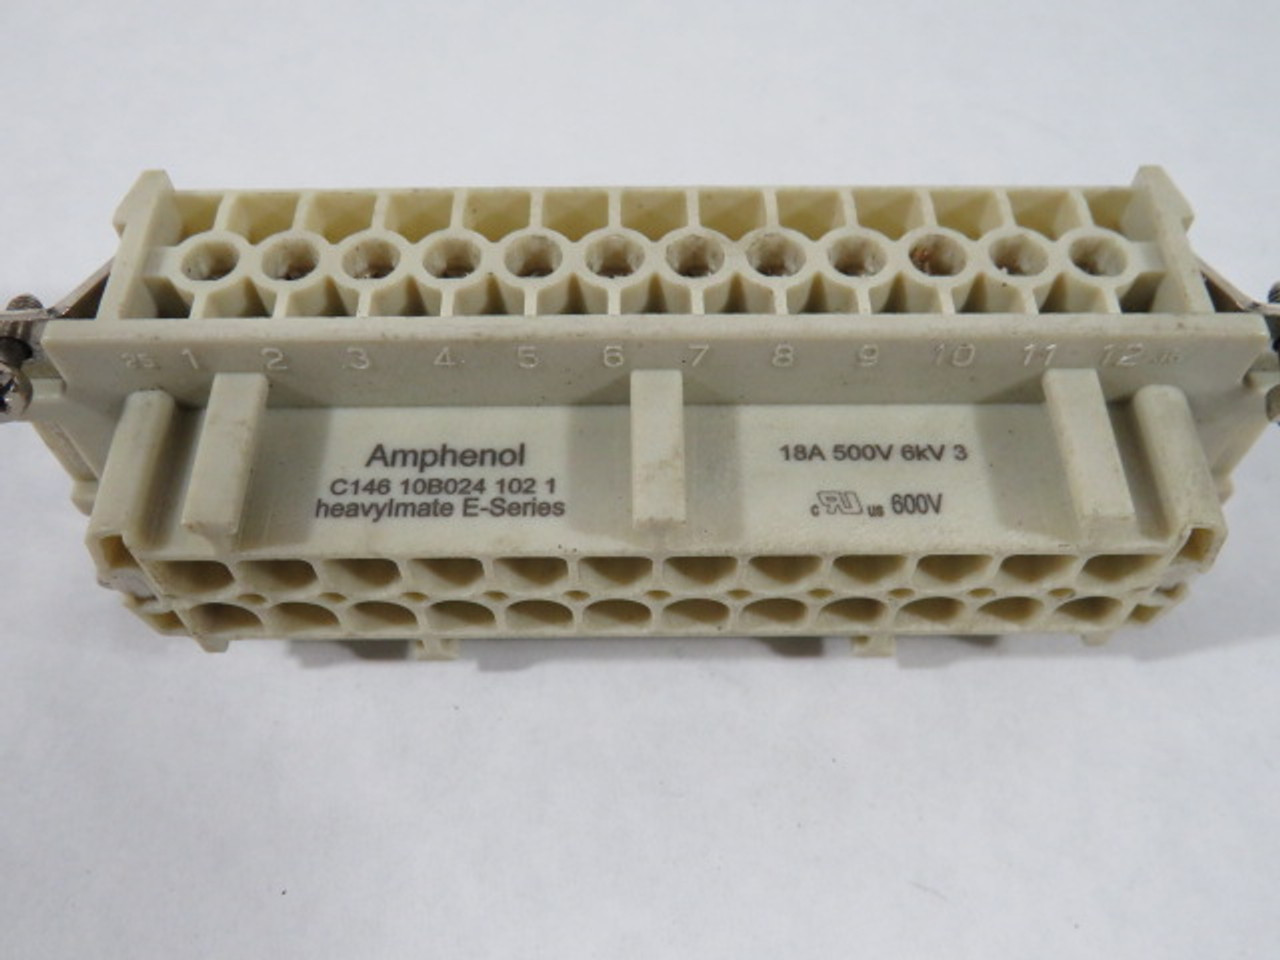 Amphenol C146-10B024-102-1 Heavy Duty Connector Ser E 18A 500V USED